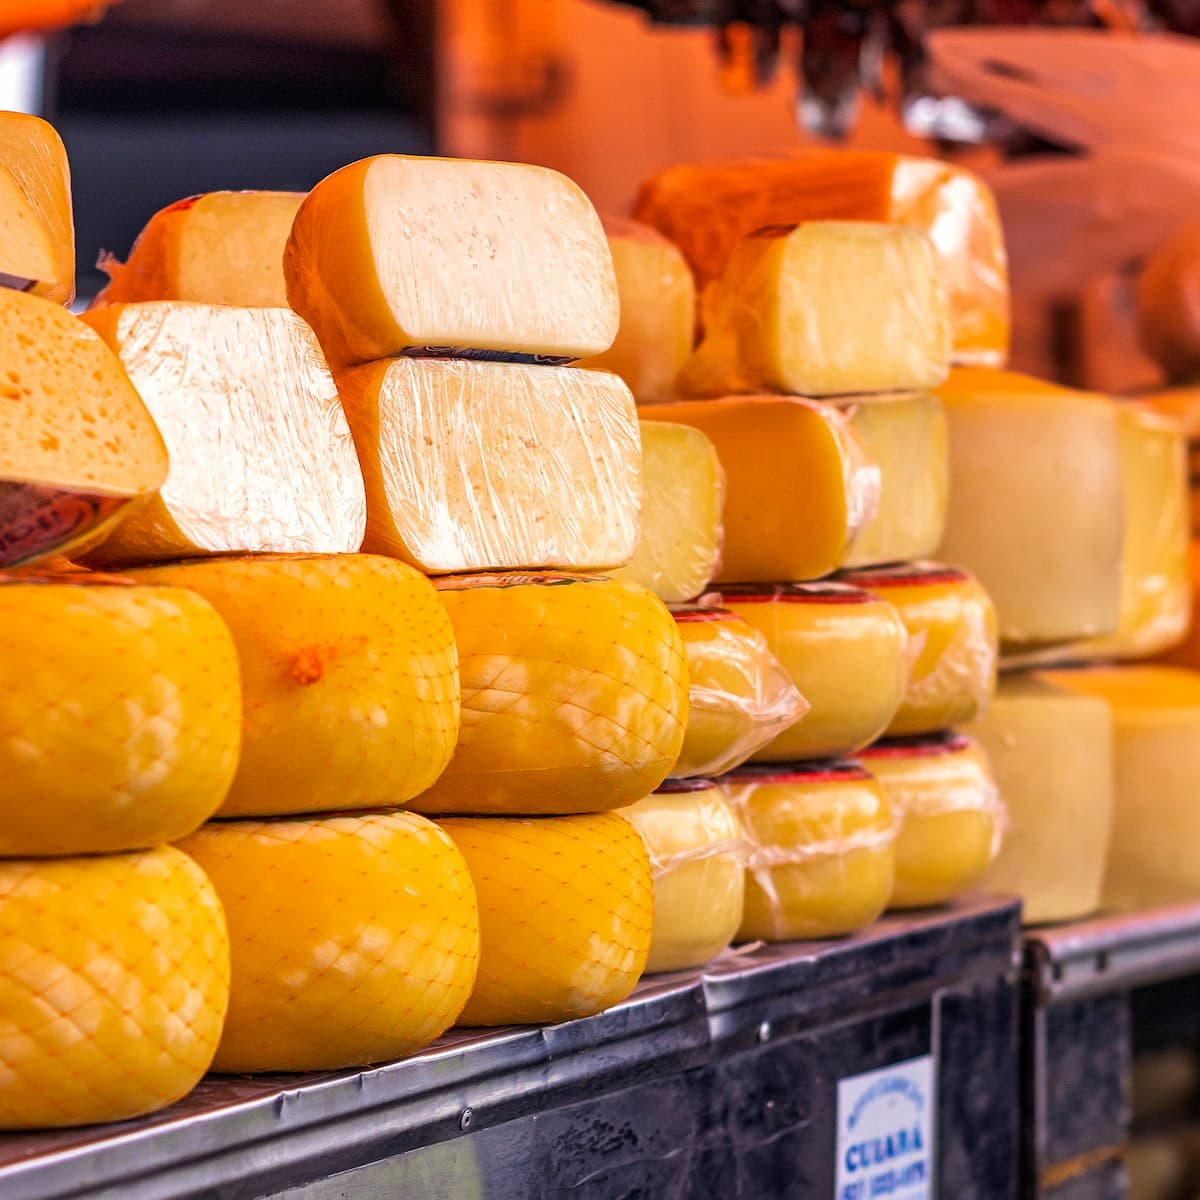 Immagine meramente illustrativa dei formaggi, Prodotto in una queijaria. Immagini: Leandro Bezerra.